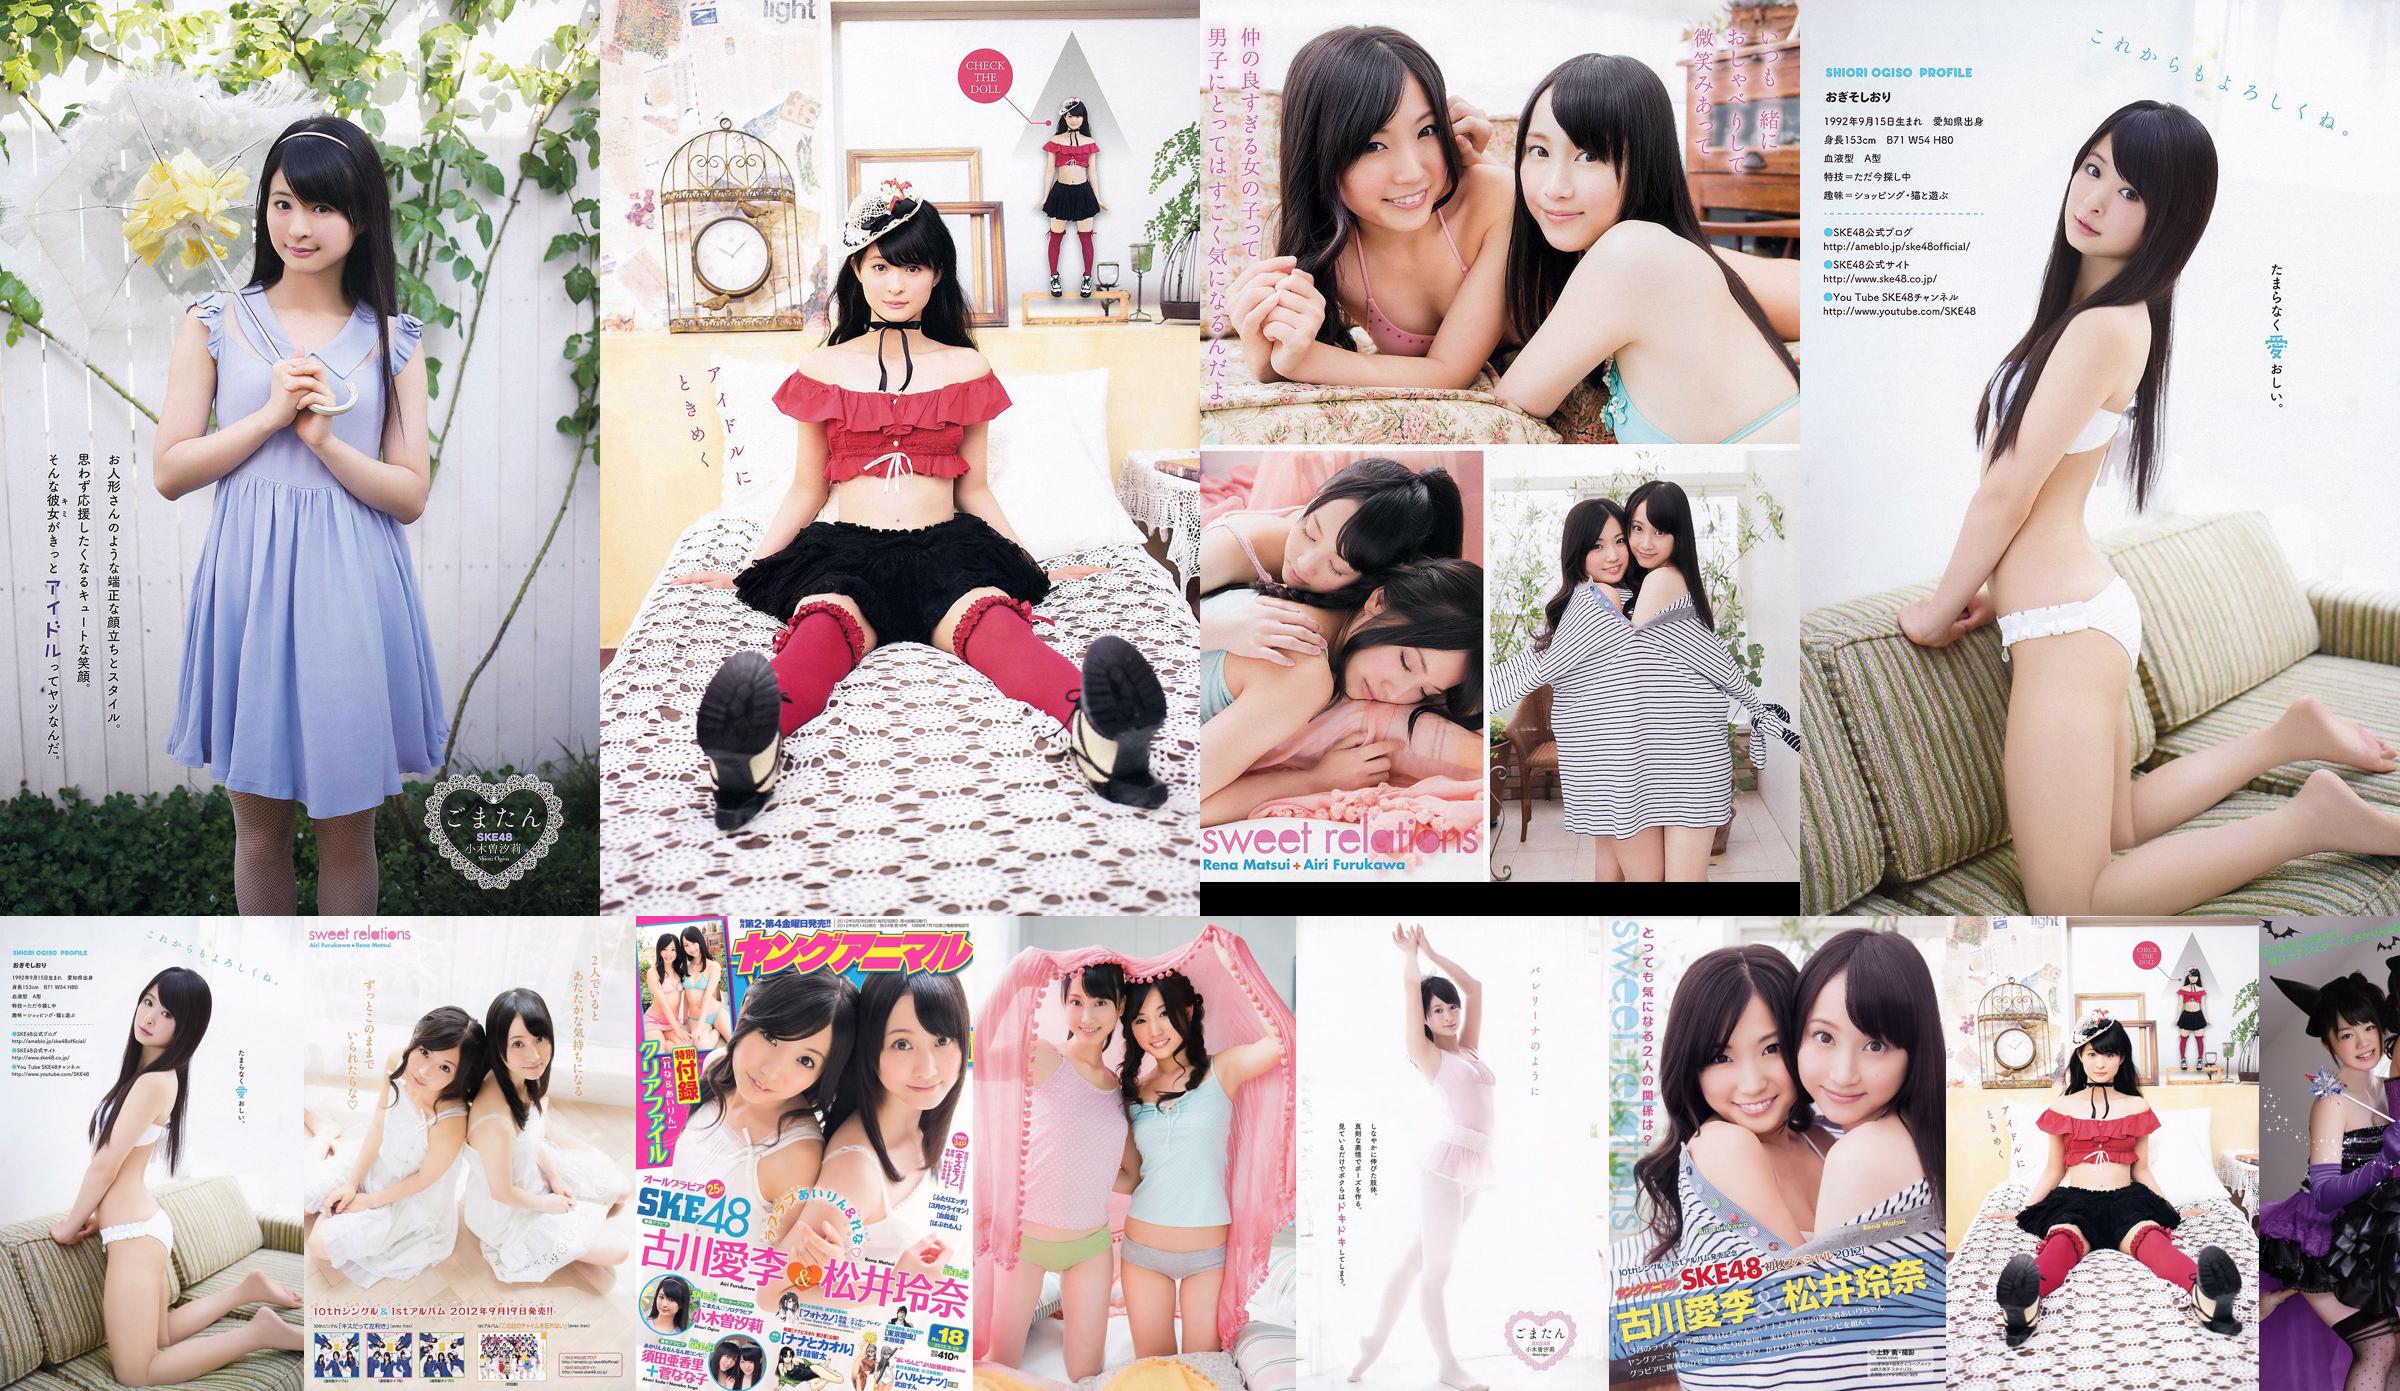 Ai Li Furukawa, Rena Matsui, Sasa Ogi, Aikari Suda [Animal joven] 2012 No.18 Photo Magazine No.13f847 Página 13